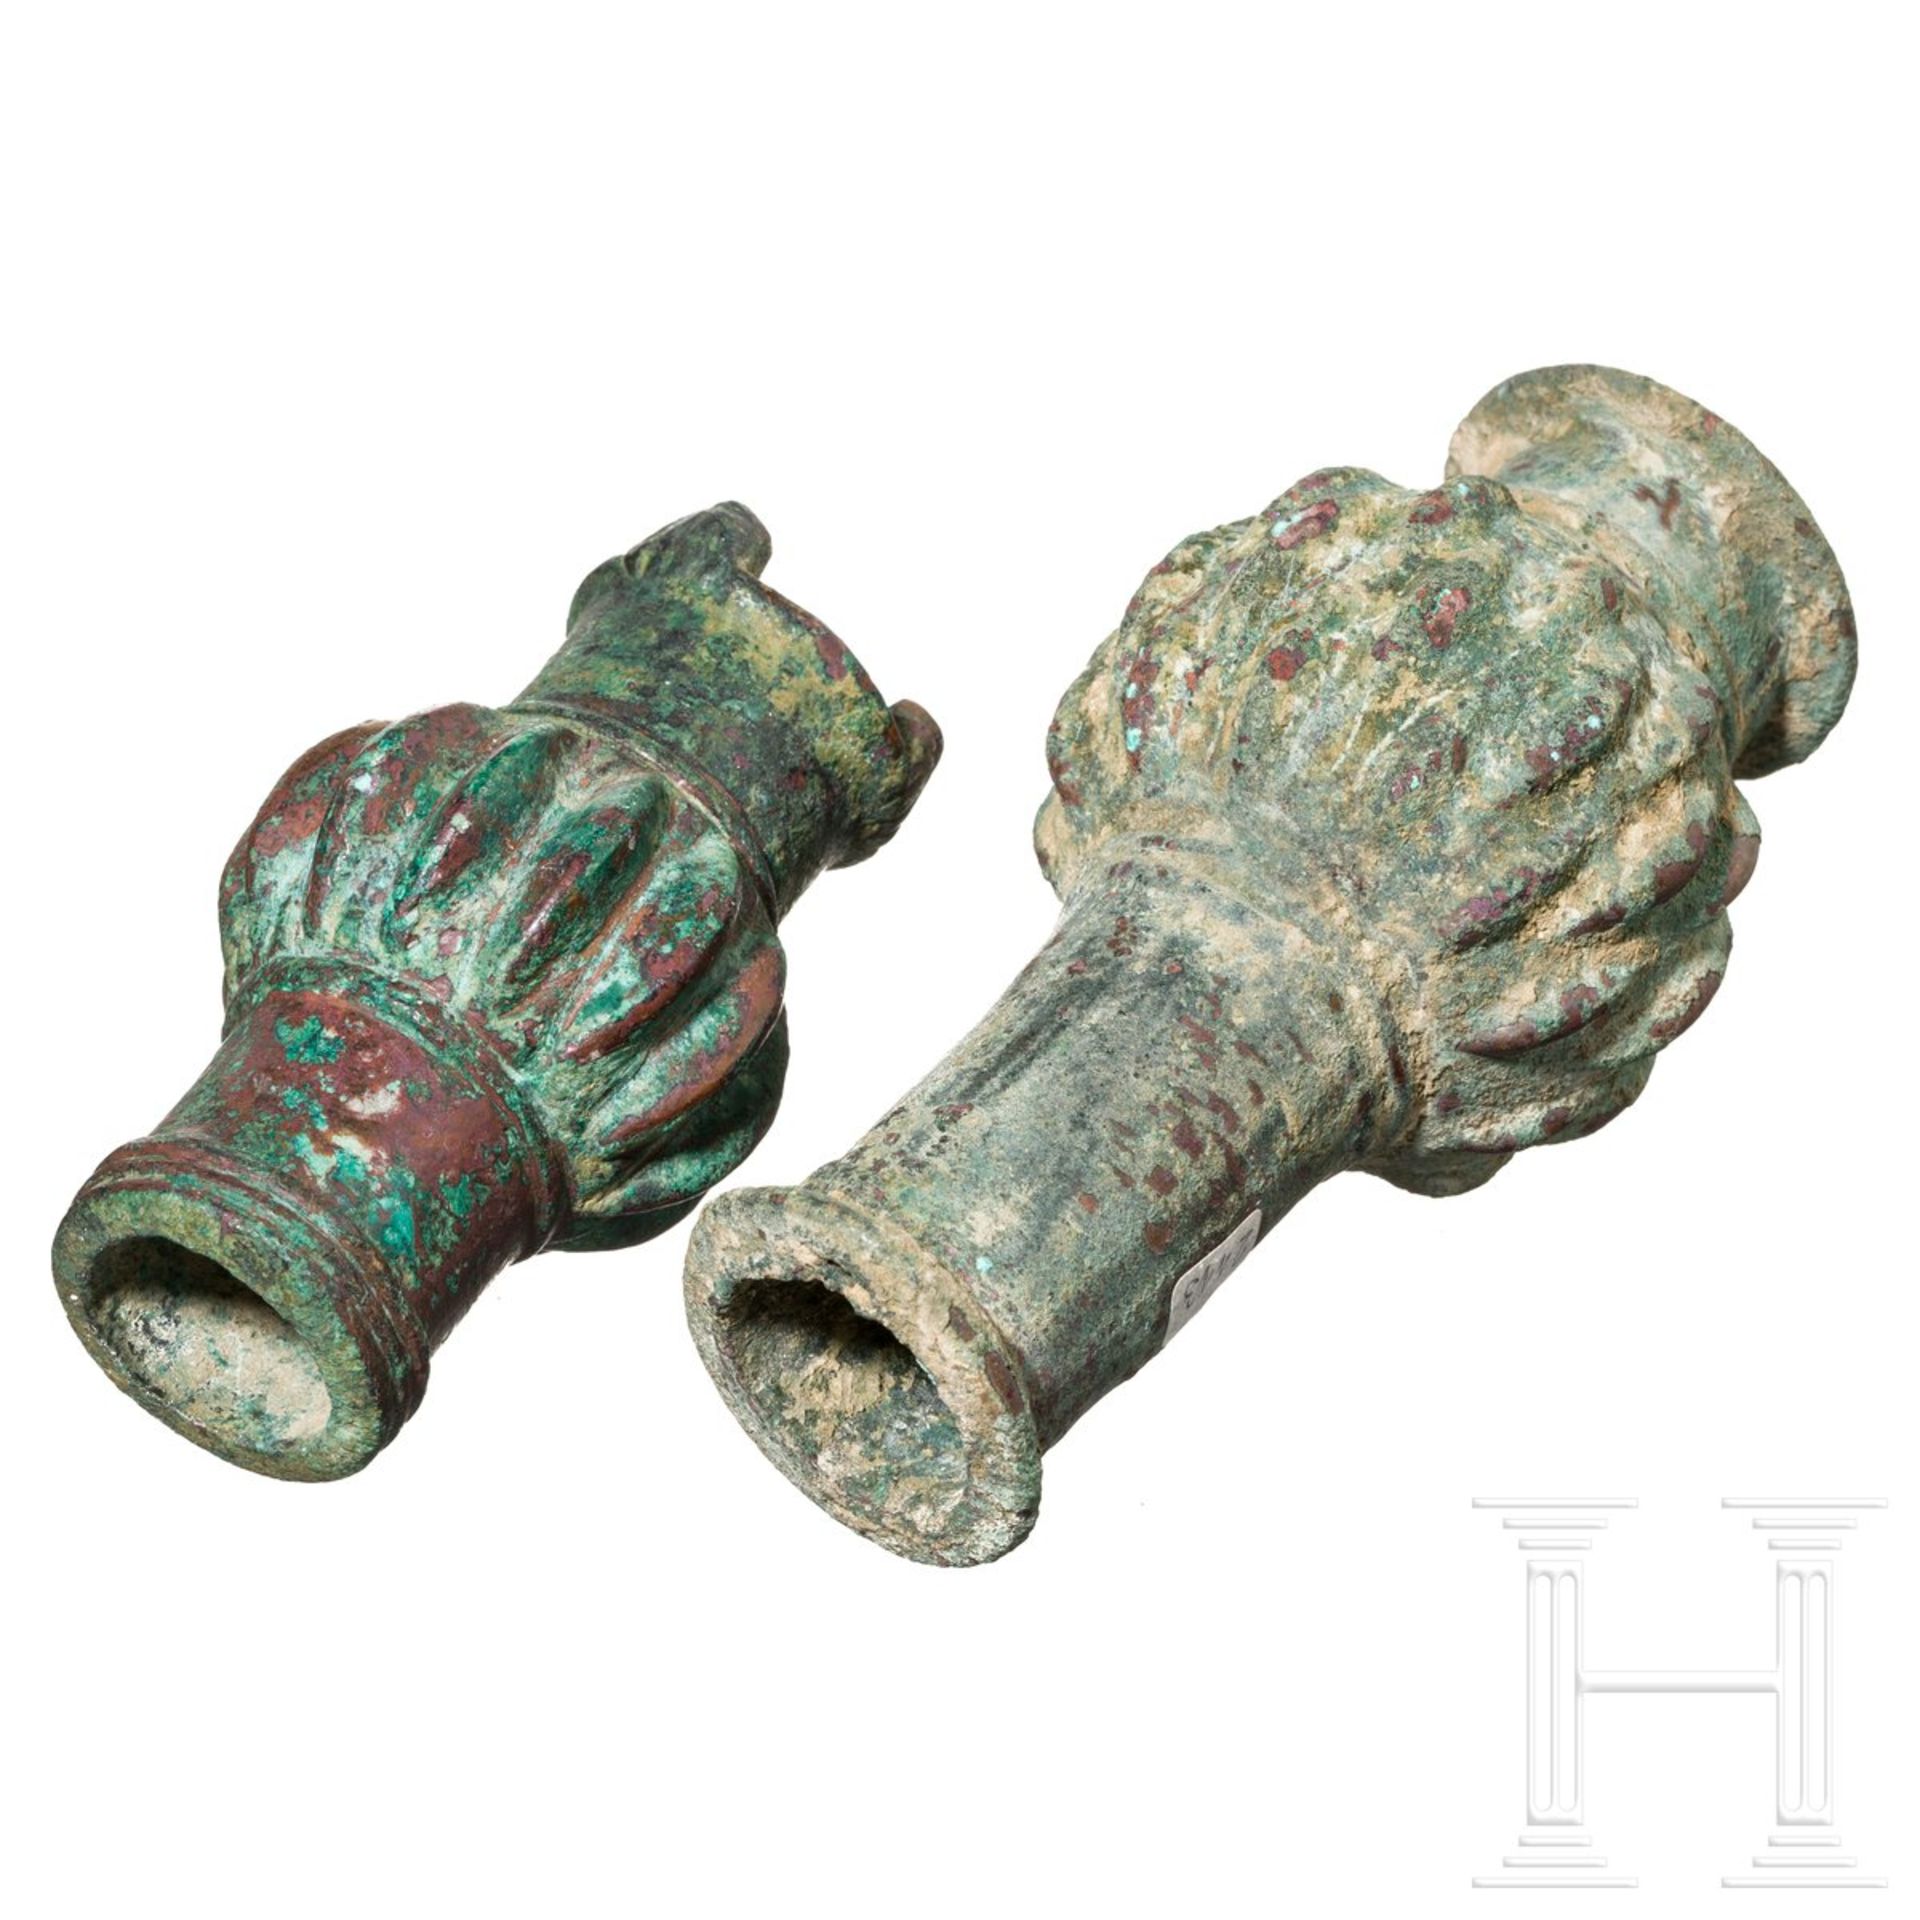 Zwei bronzene Keulenköpfe, Luristan, Westiran, Eisenzeit III, 8. - 7. Jhdt. v. Chr. - Image 3 of 3